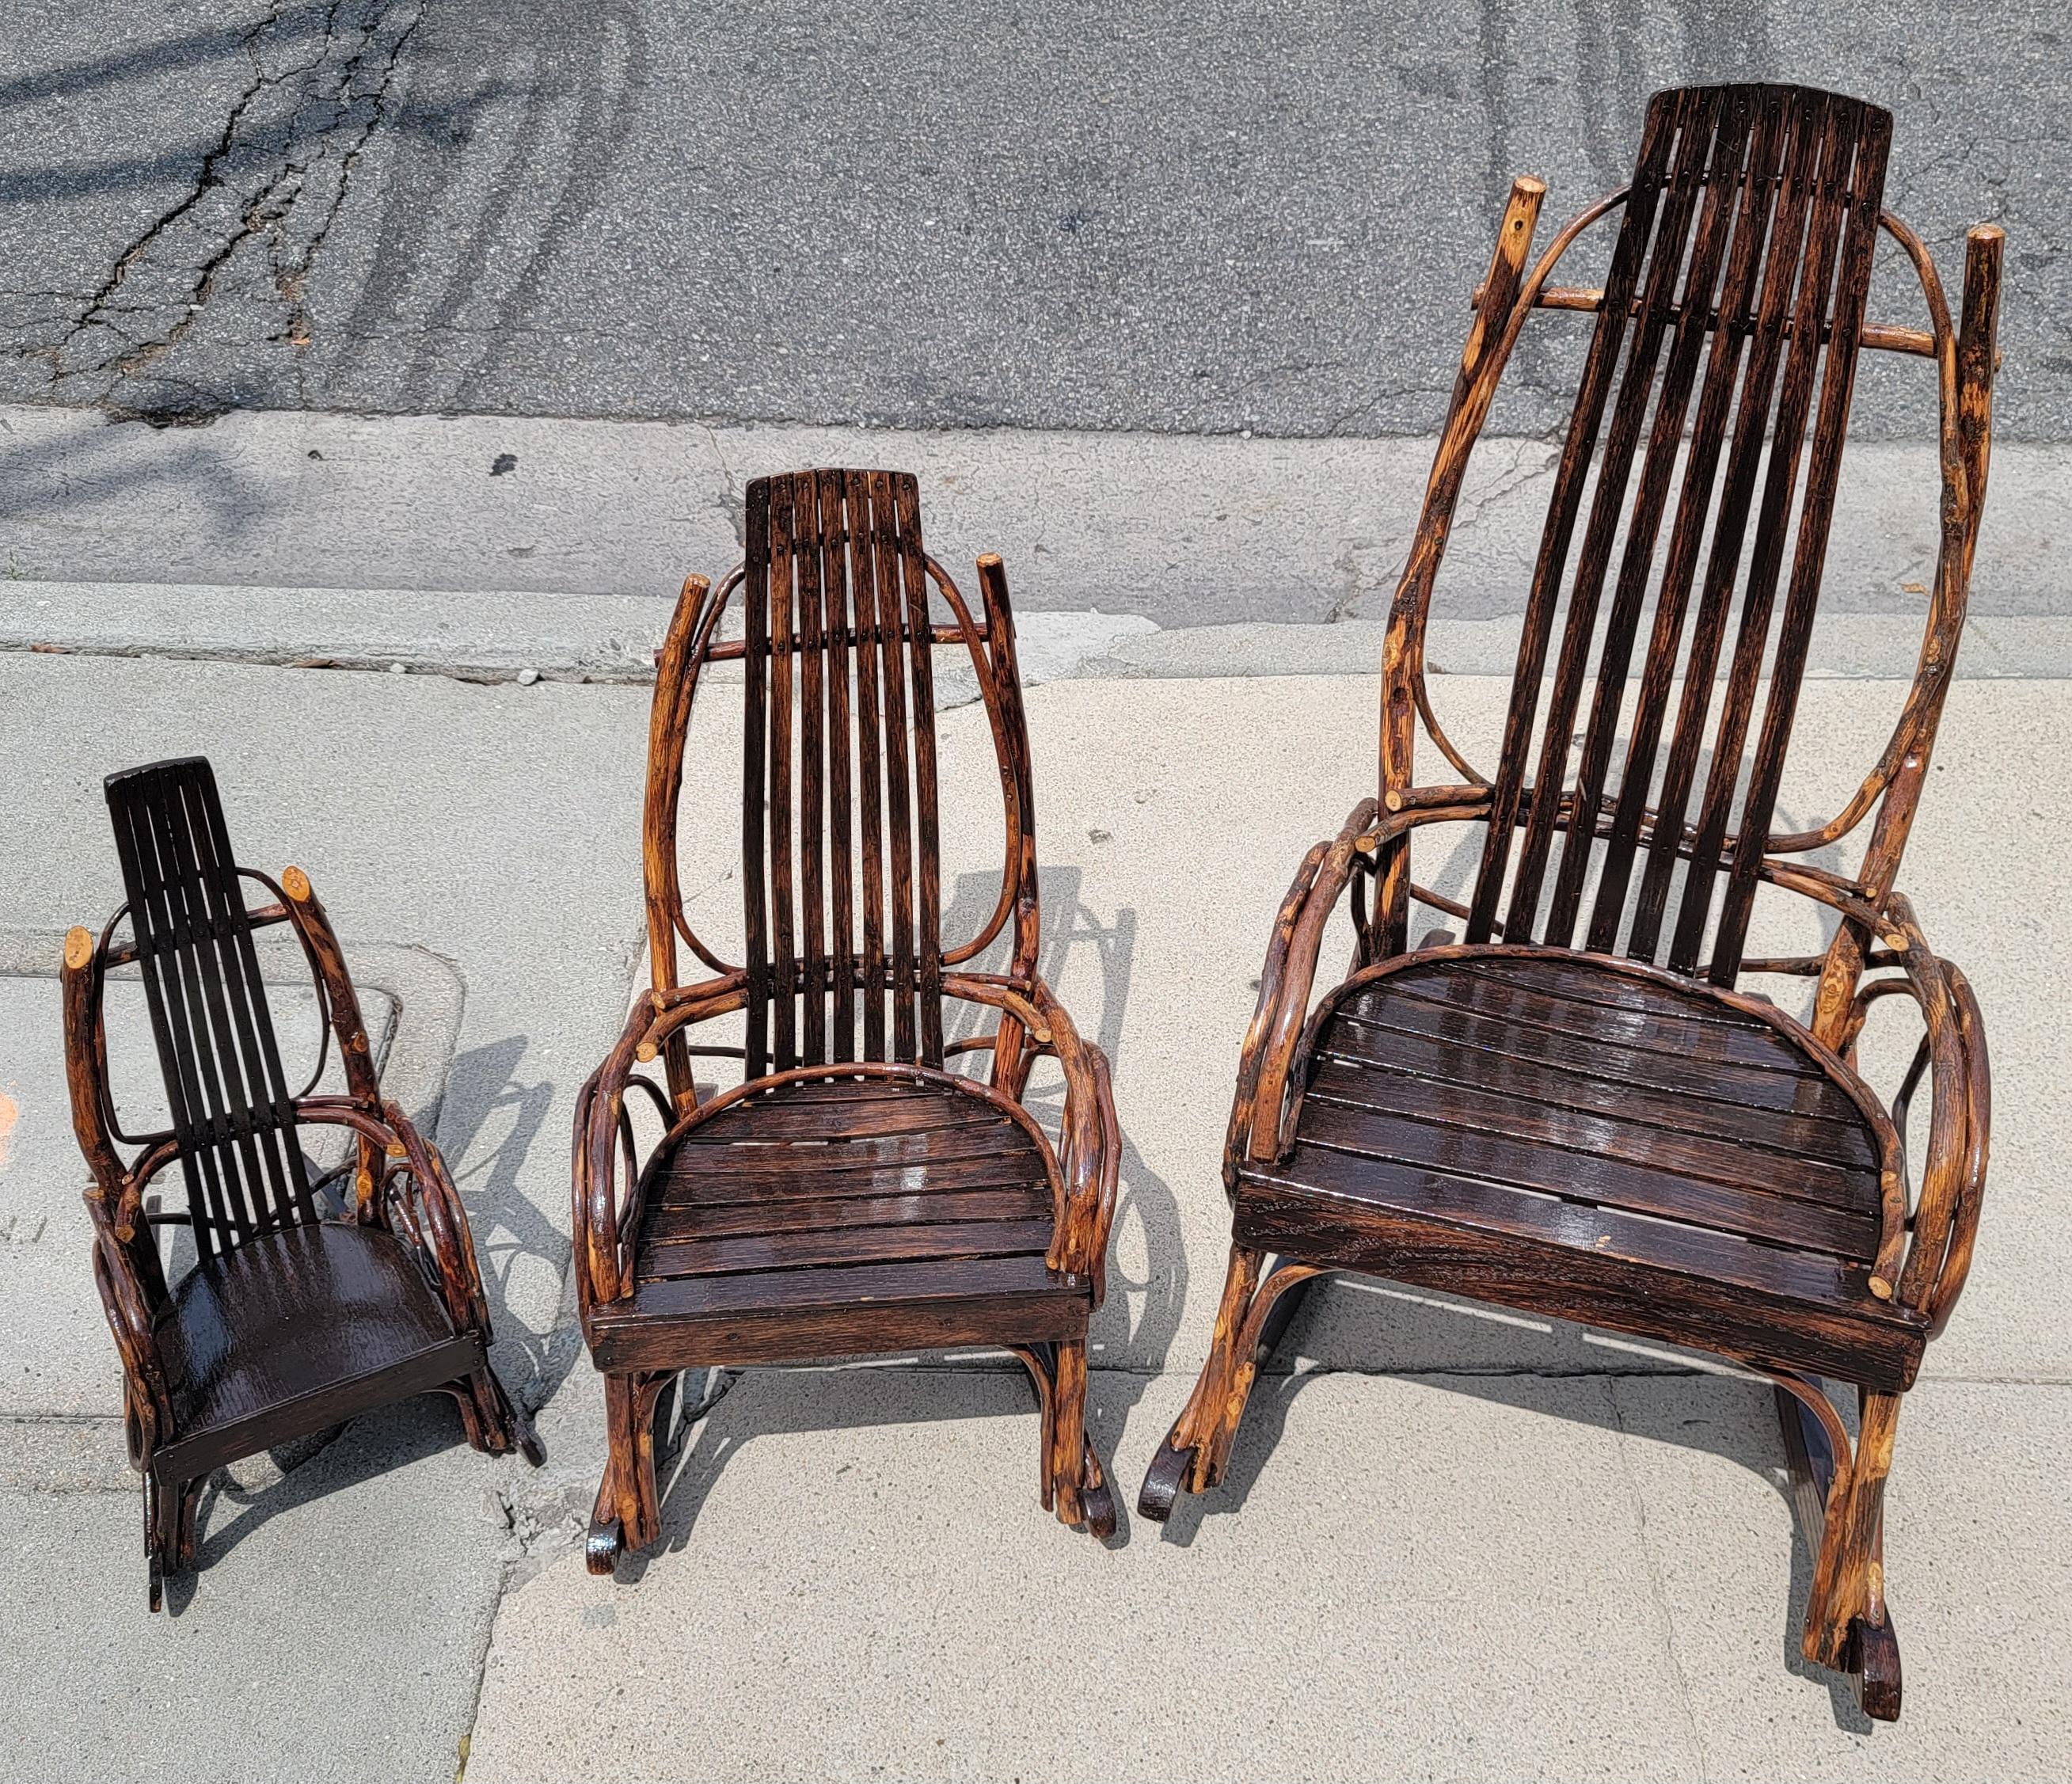 Chaises à bascule pour enfants fabriquées à la main par les Amish et en bon état. 
Ces chaises à bascule sont marquées Amish 1988 et proviennent du comté de Lancaster, en Pennsylvanie. Ces fauteuils à bascule pour enfants sont tous en très bon état